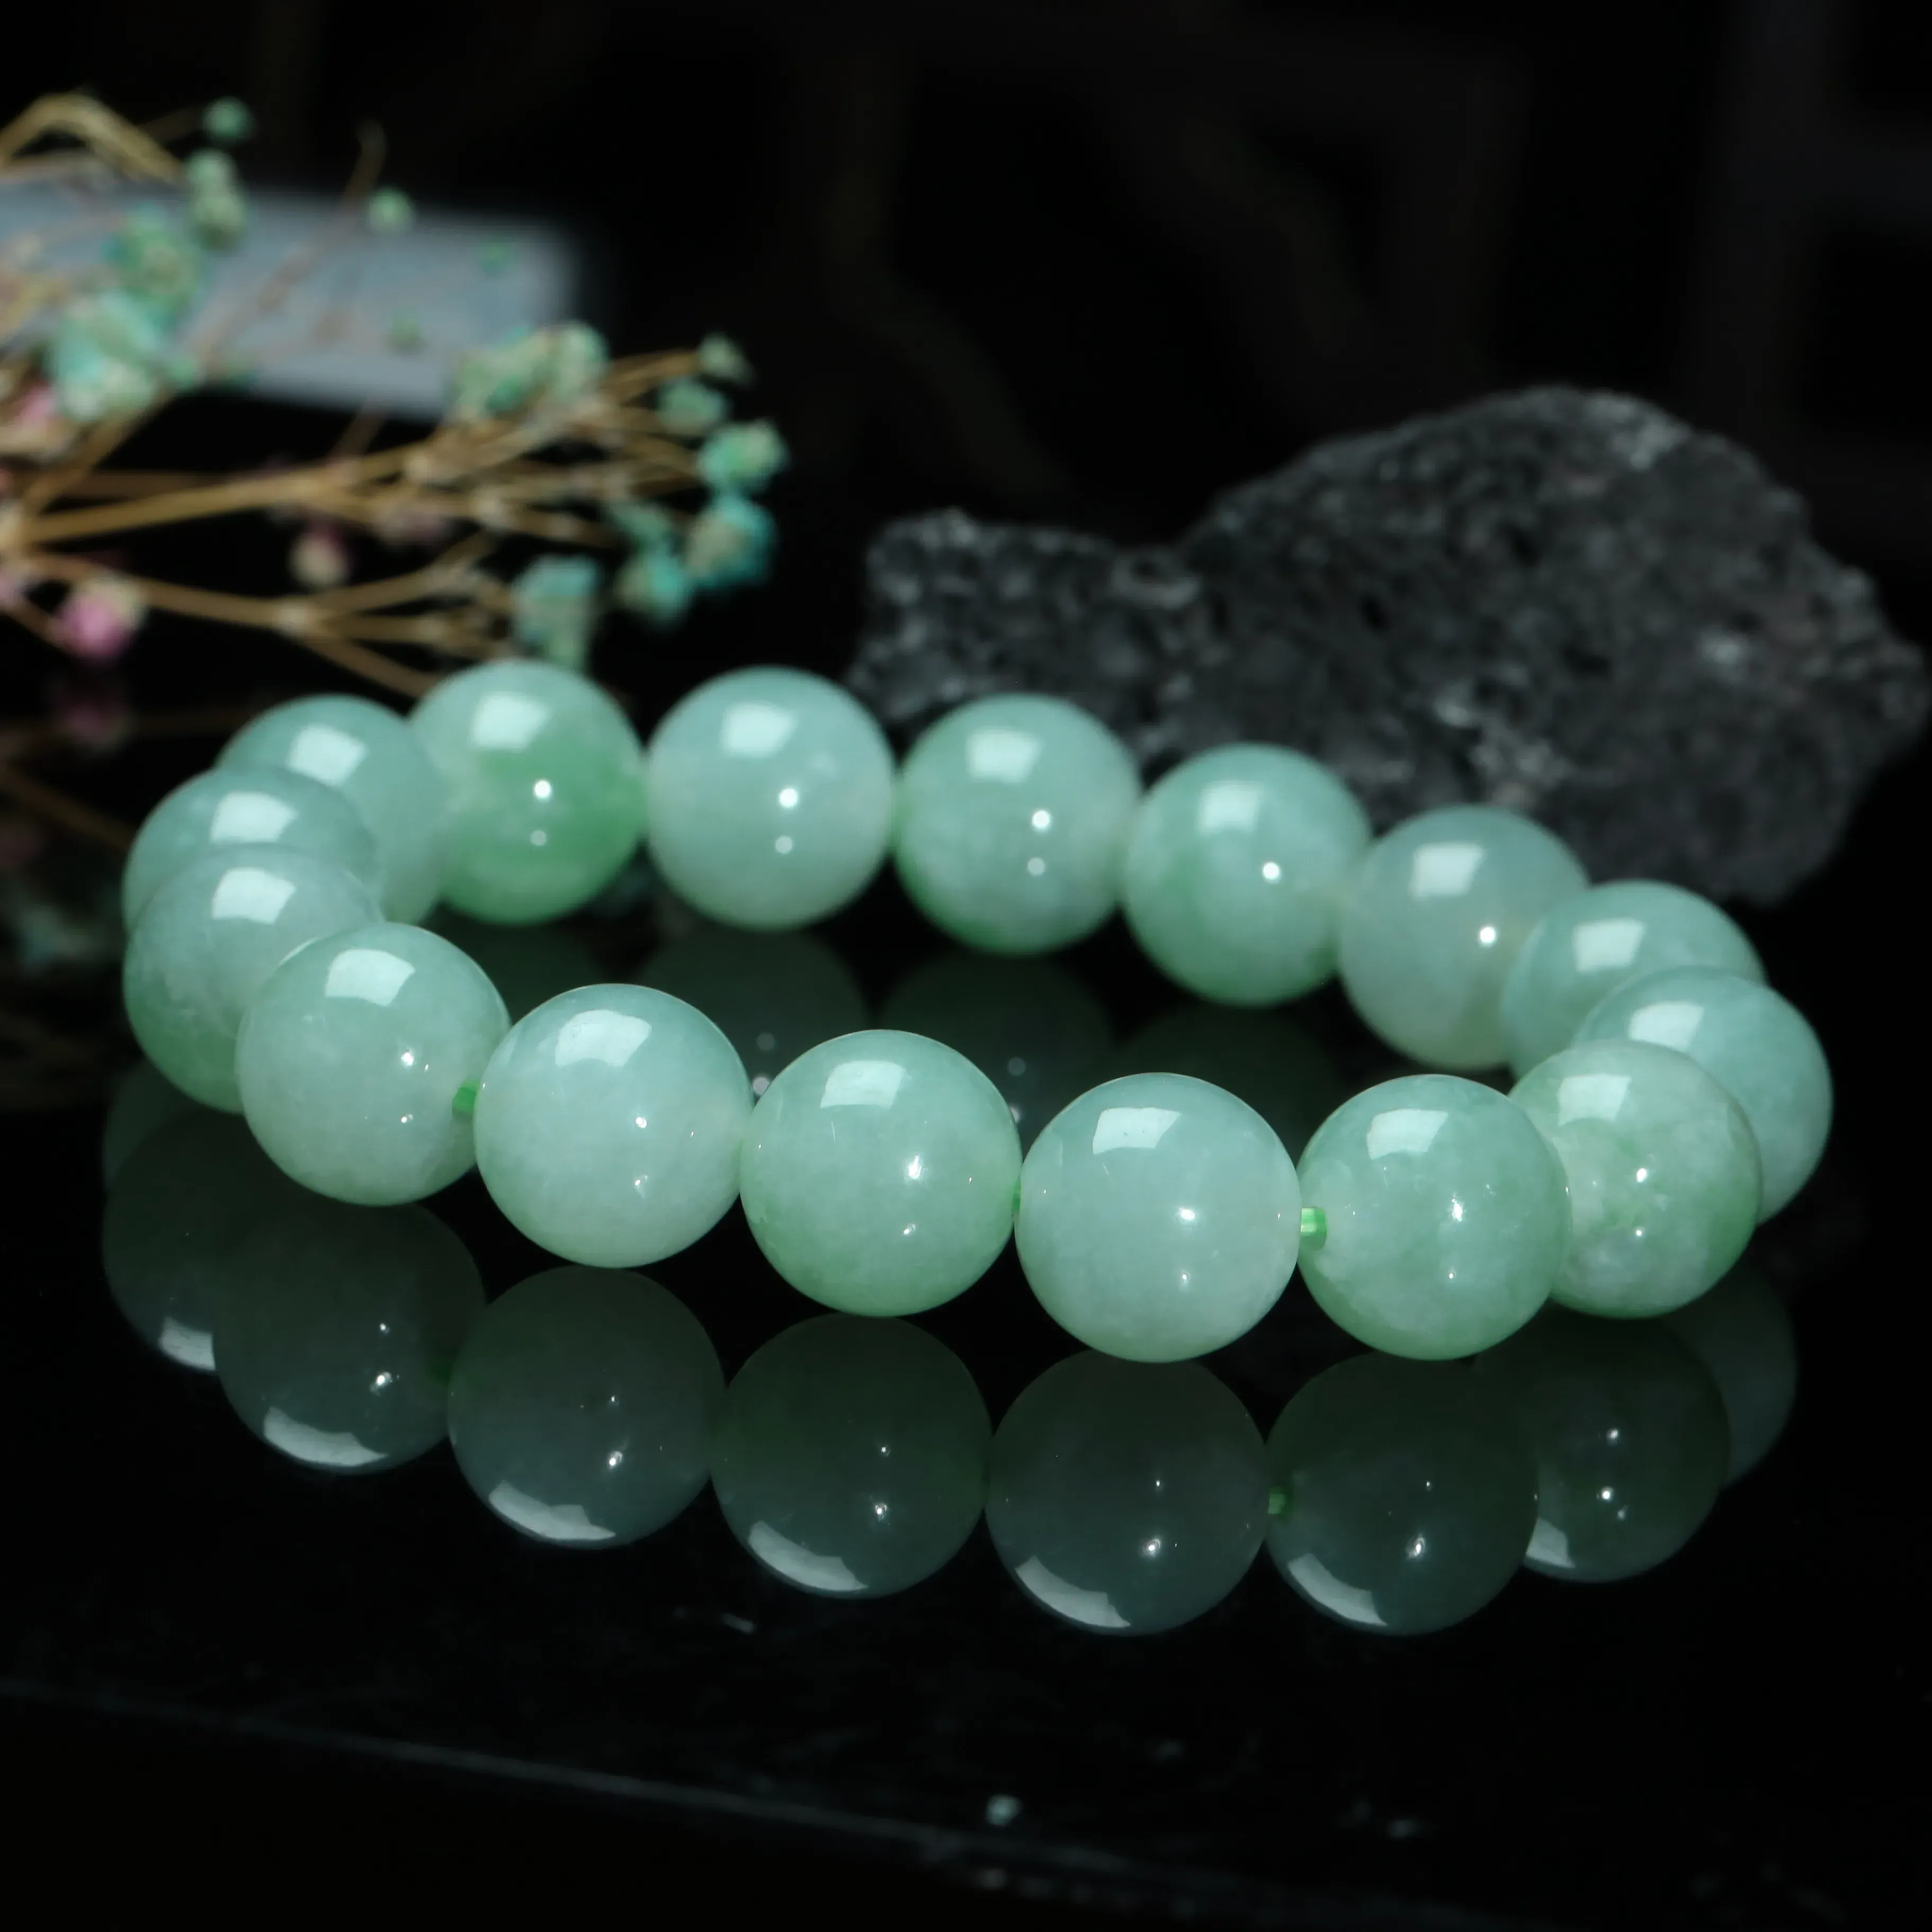 推荐款浅绿翡翠圆珠手串。共16颗珠子，取其中一颗珠尺寸大约13.3mm，亮丽秀气，圆润饱满。上手佩戴效果佳。